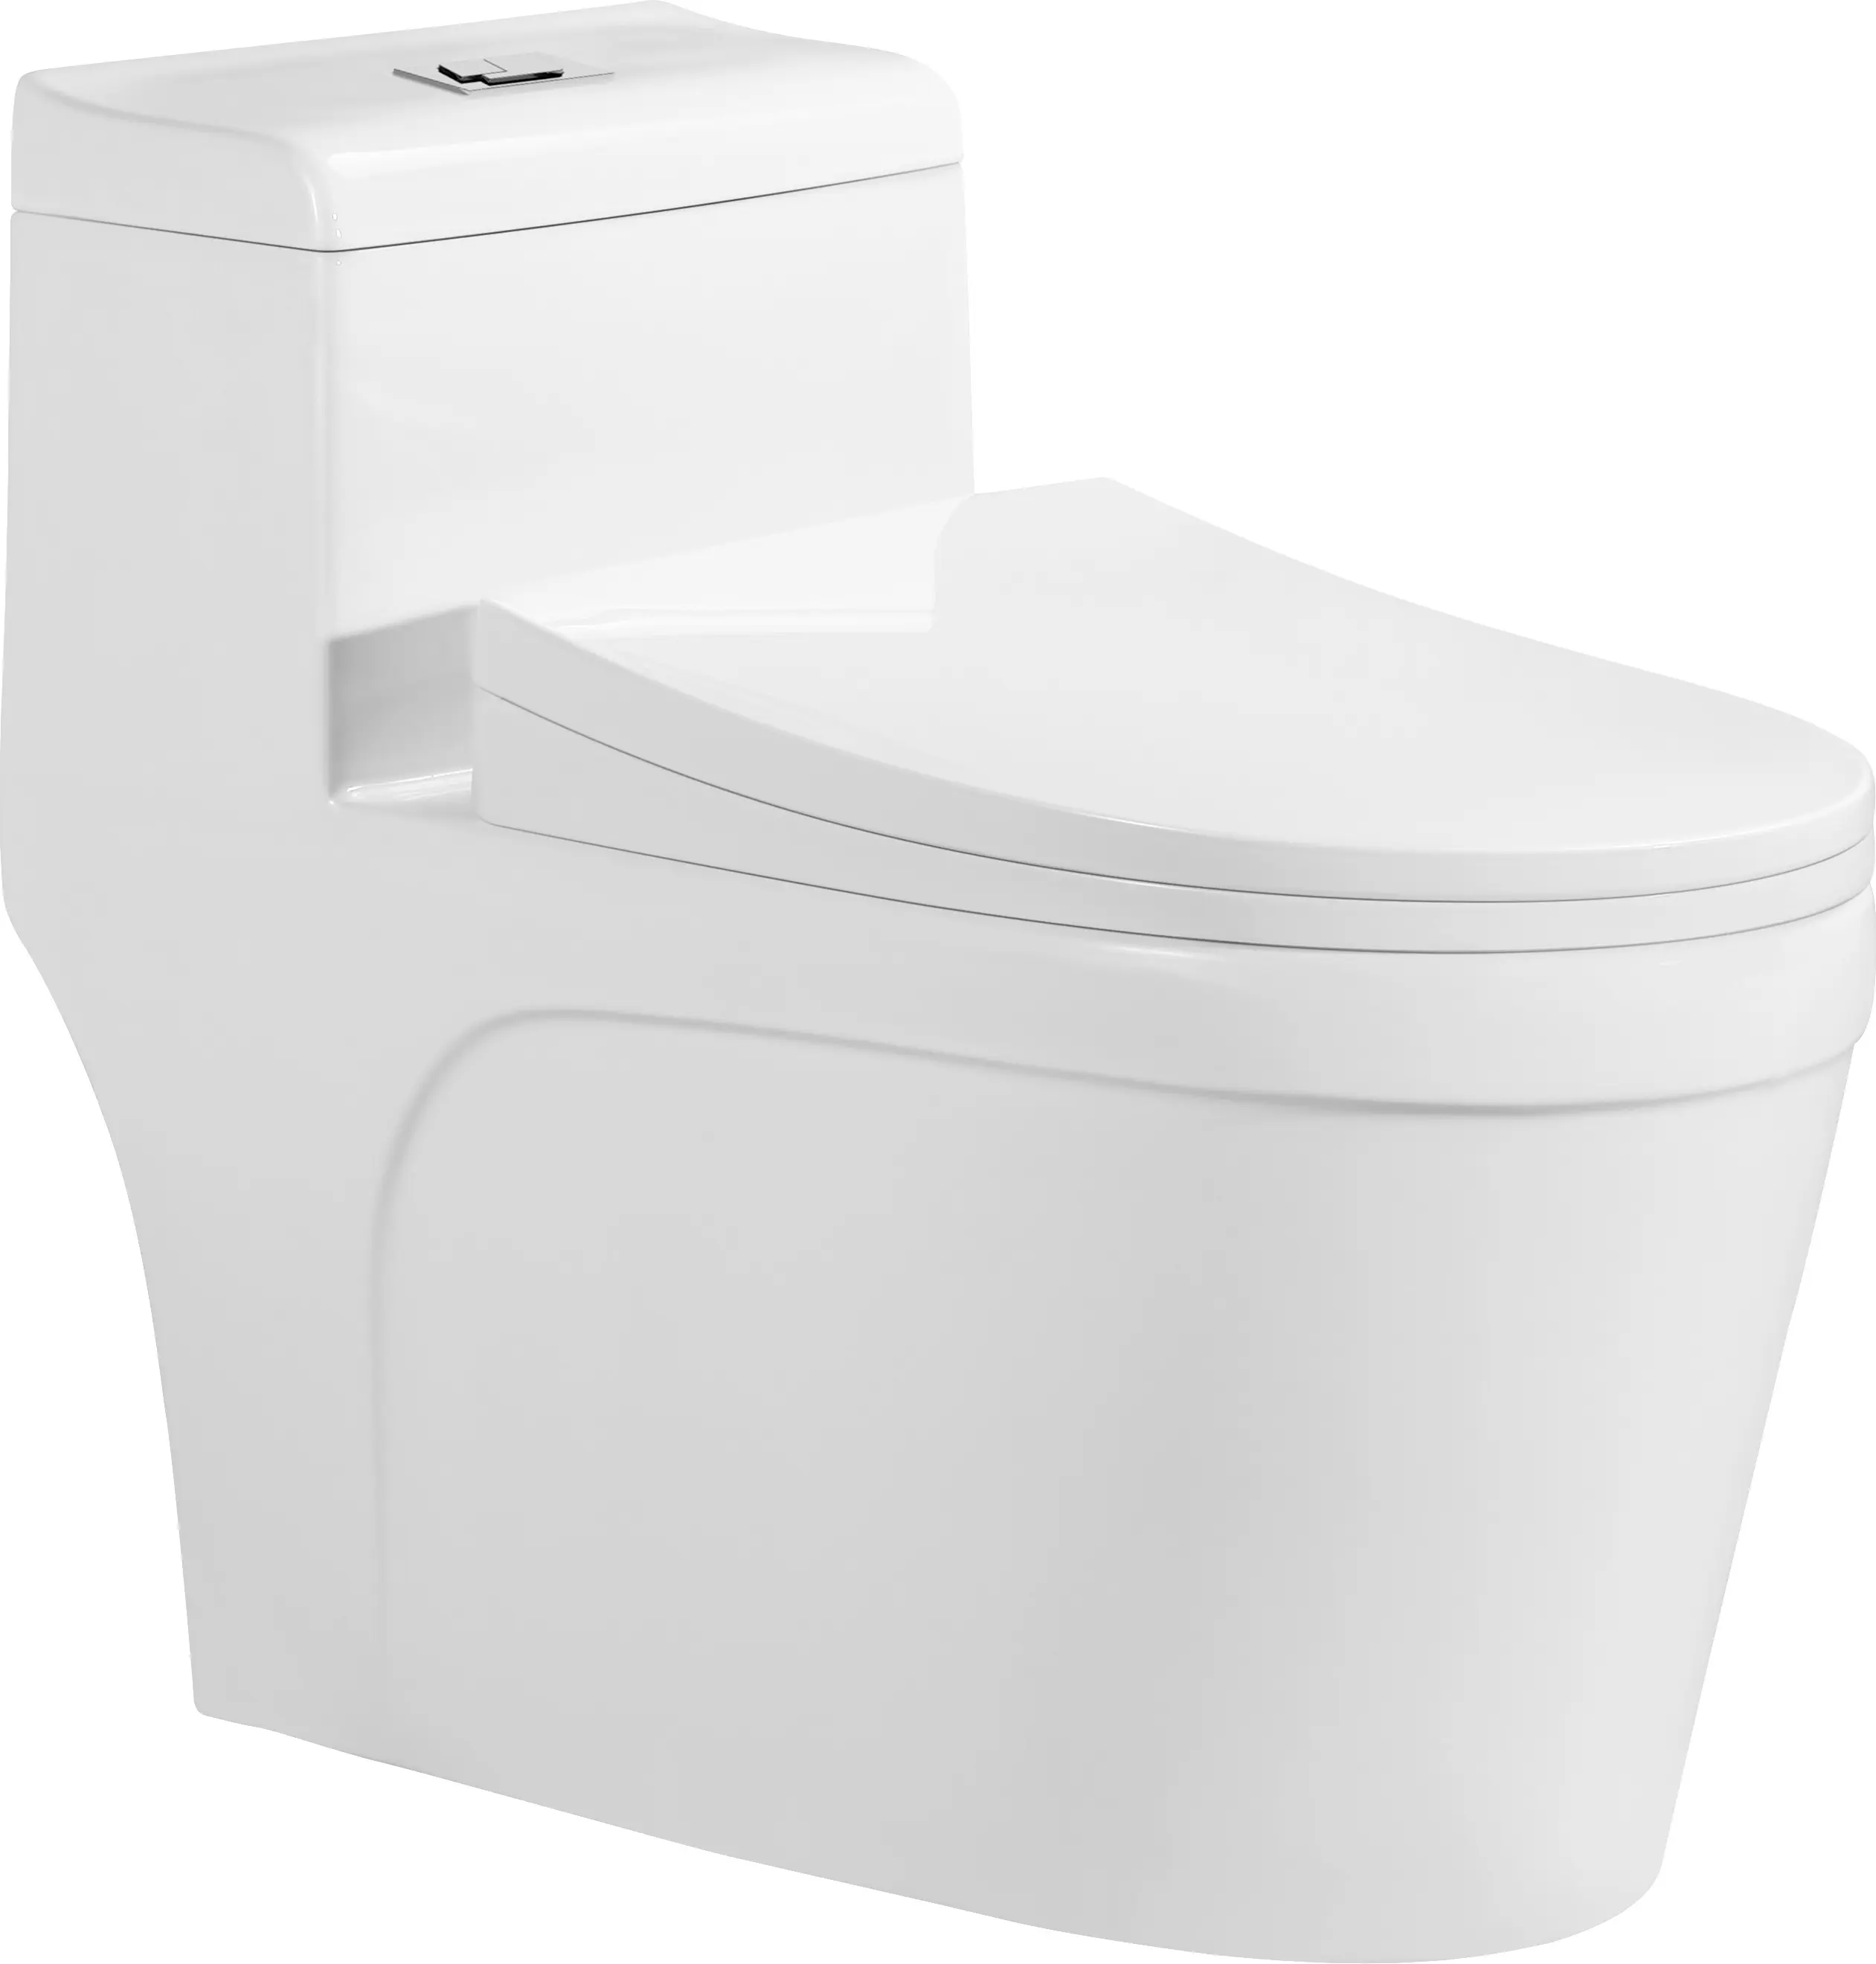 Appareil sanitaire Toilette monobloc WC confortable Salle de bain Vente chaude Couverture souple Siège blanc Style Life